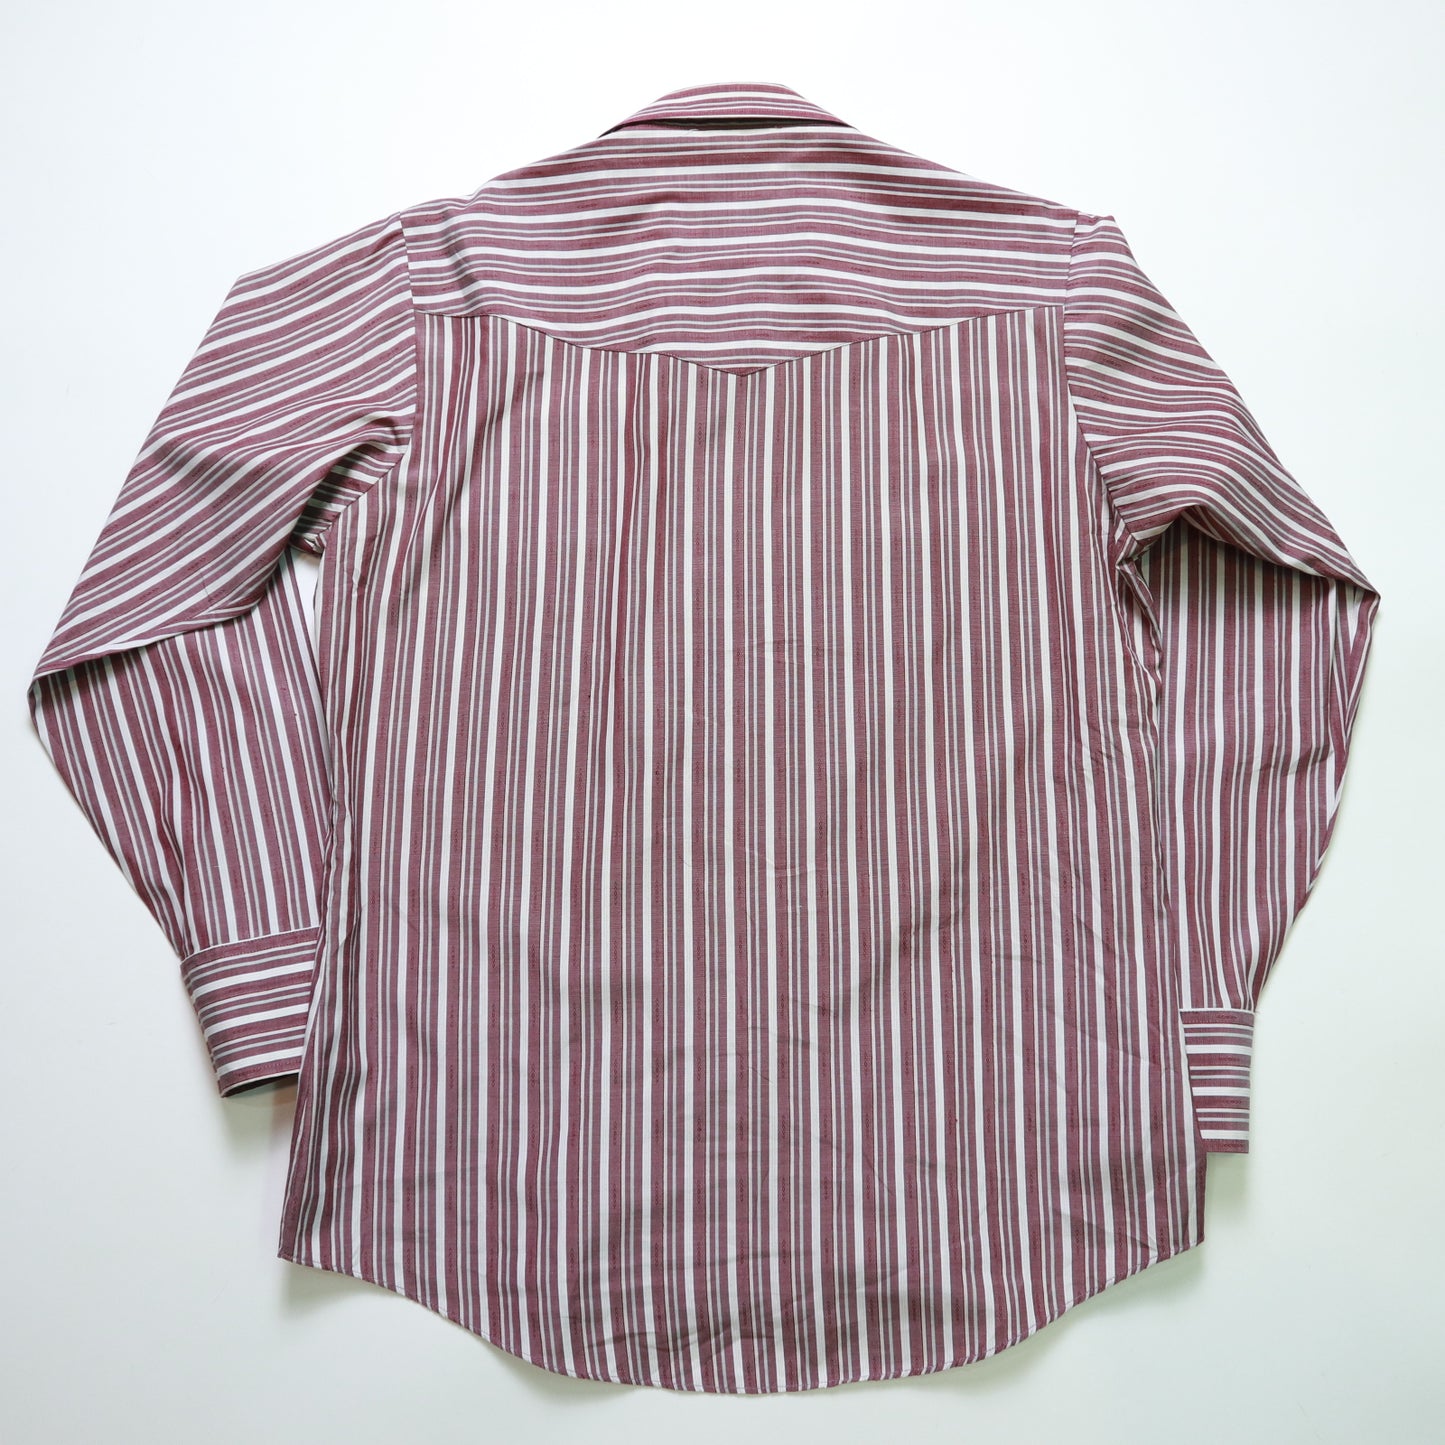 80-90年代 ELY Cattleman Western Shirt ピンクとパープルのストライプ ウエスタンシャツ Ranchwear ヴィンテージシャツ